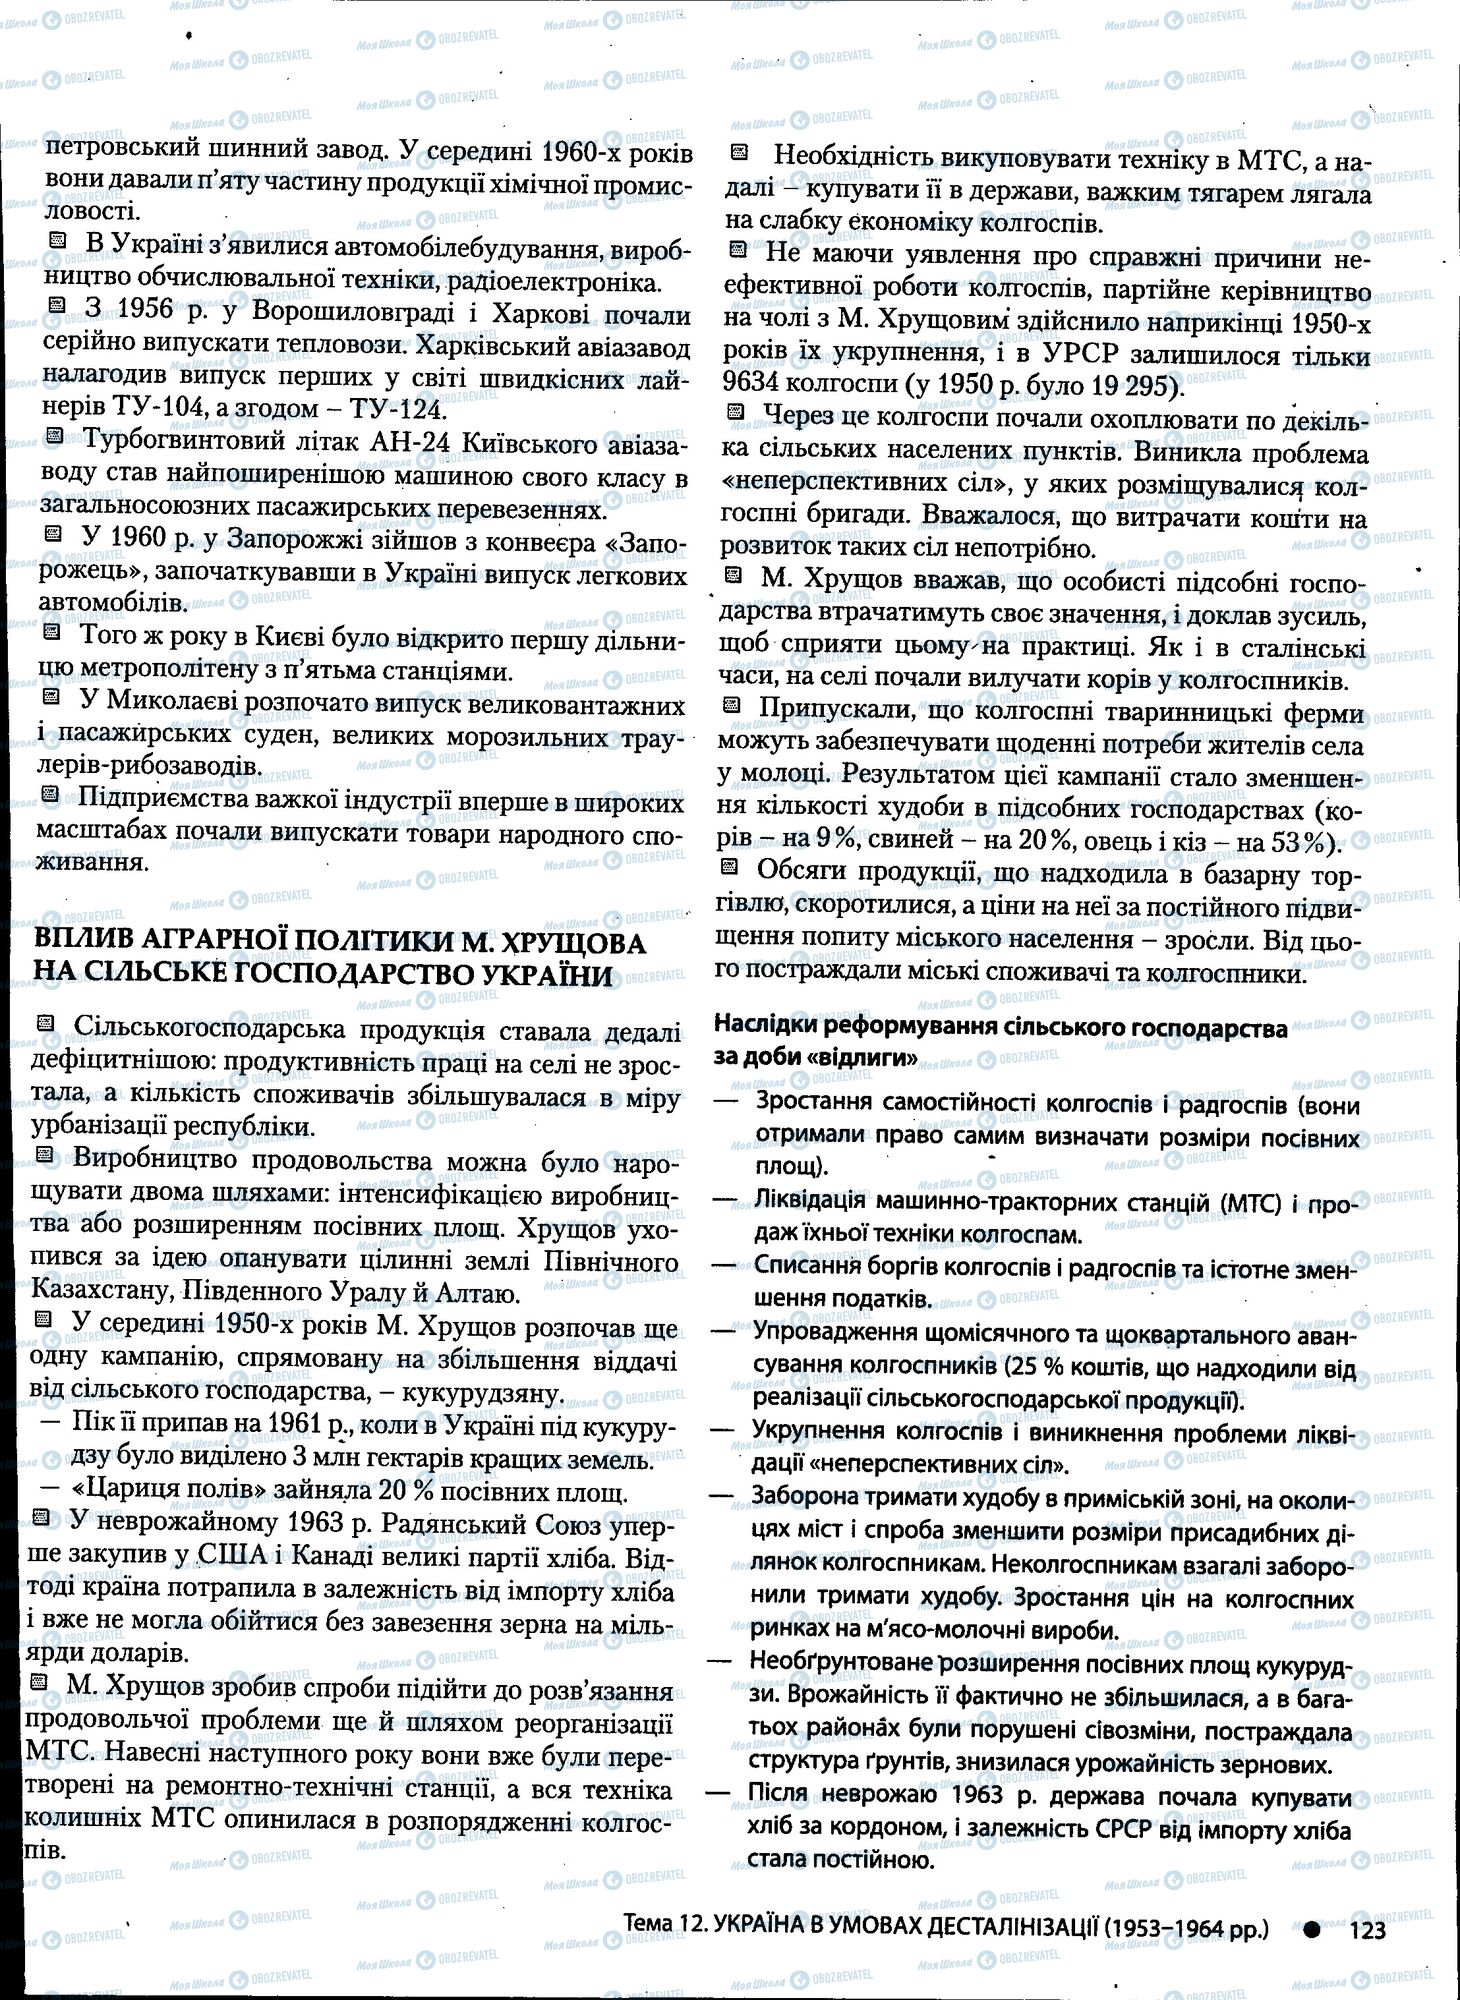 ДПА История Украины 11 класс страница 123